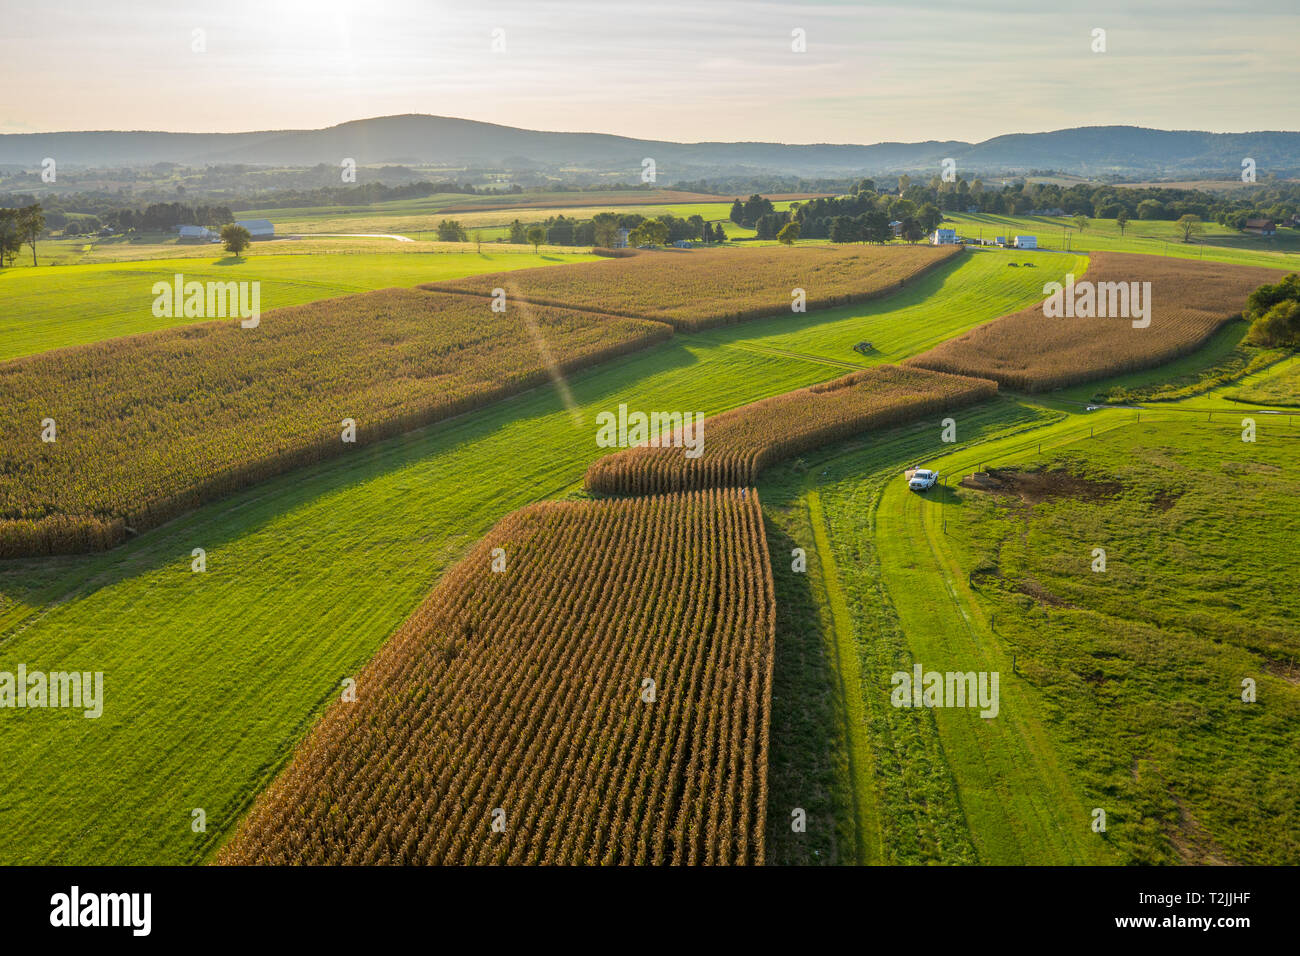 Vista aerea la luce del sole si estendesse campi di mais con le colline all'orizzonte, Middletown MD Foto Stock